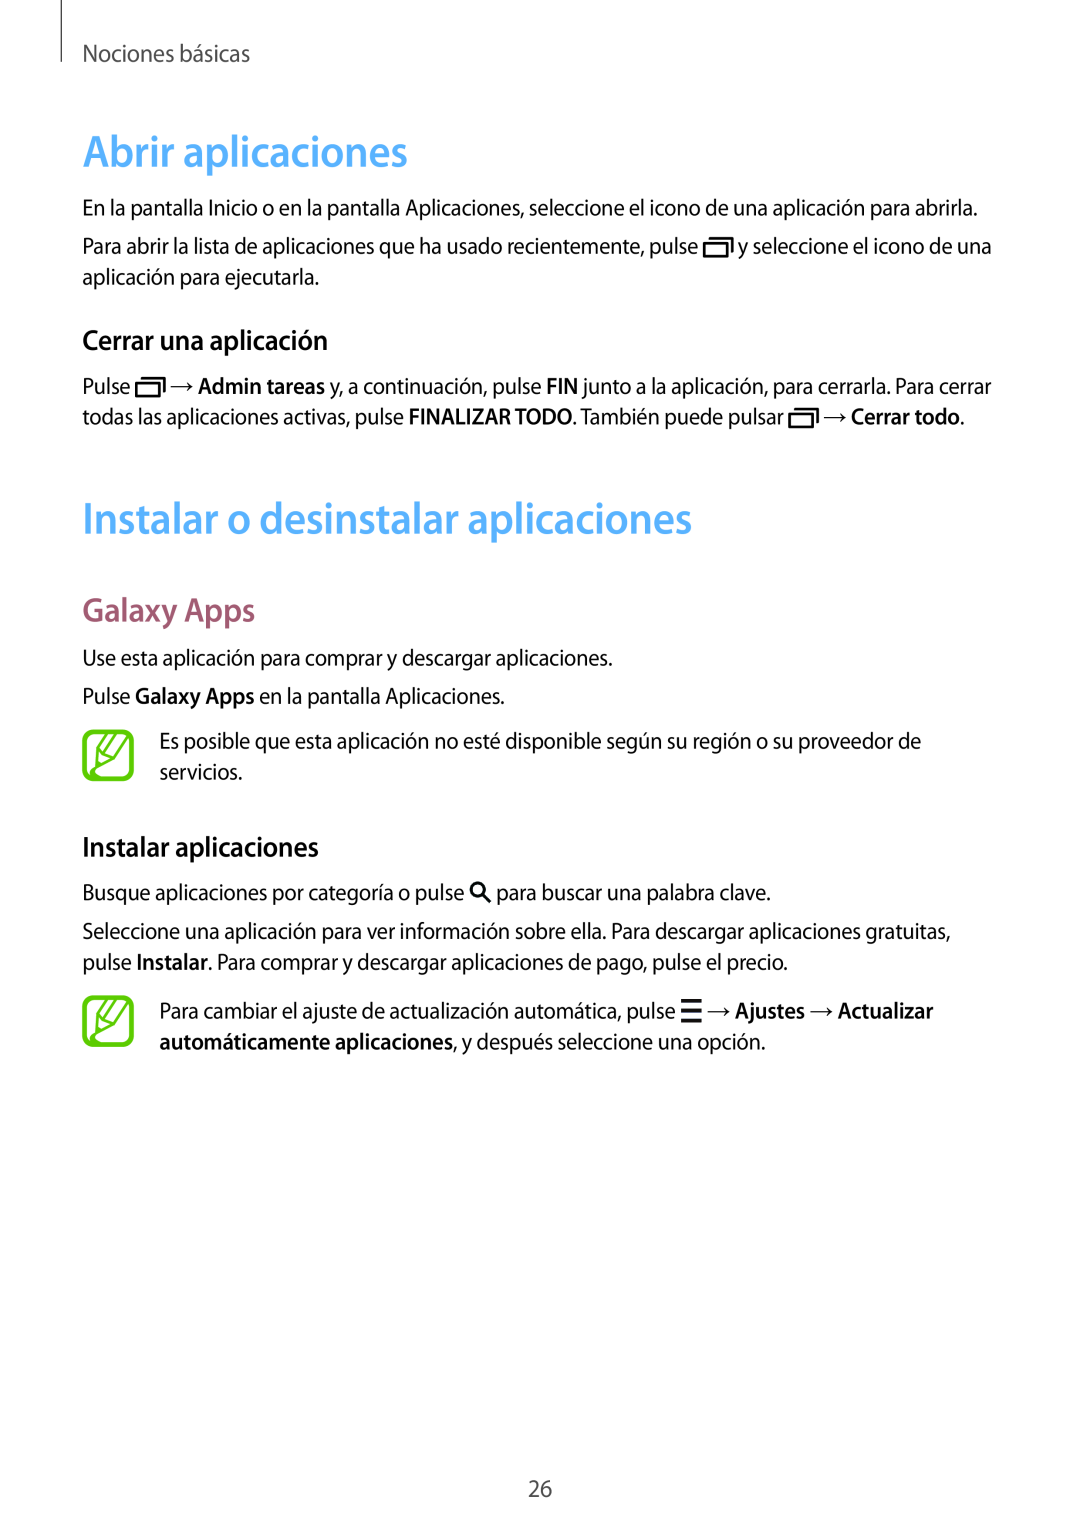 Samsung SM-T700NZWATPH manual Abrir aplicaciones, Instalar o desinstalar aplicaciones, Galaxy Apps, Cerrar una aplicación 